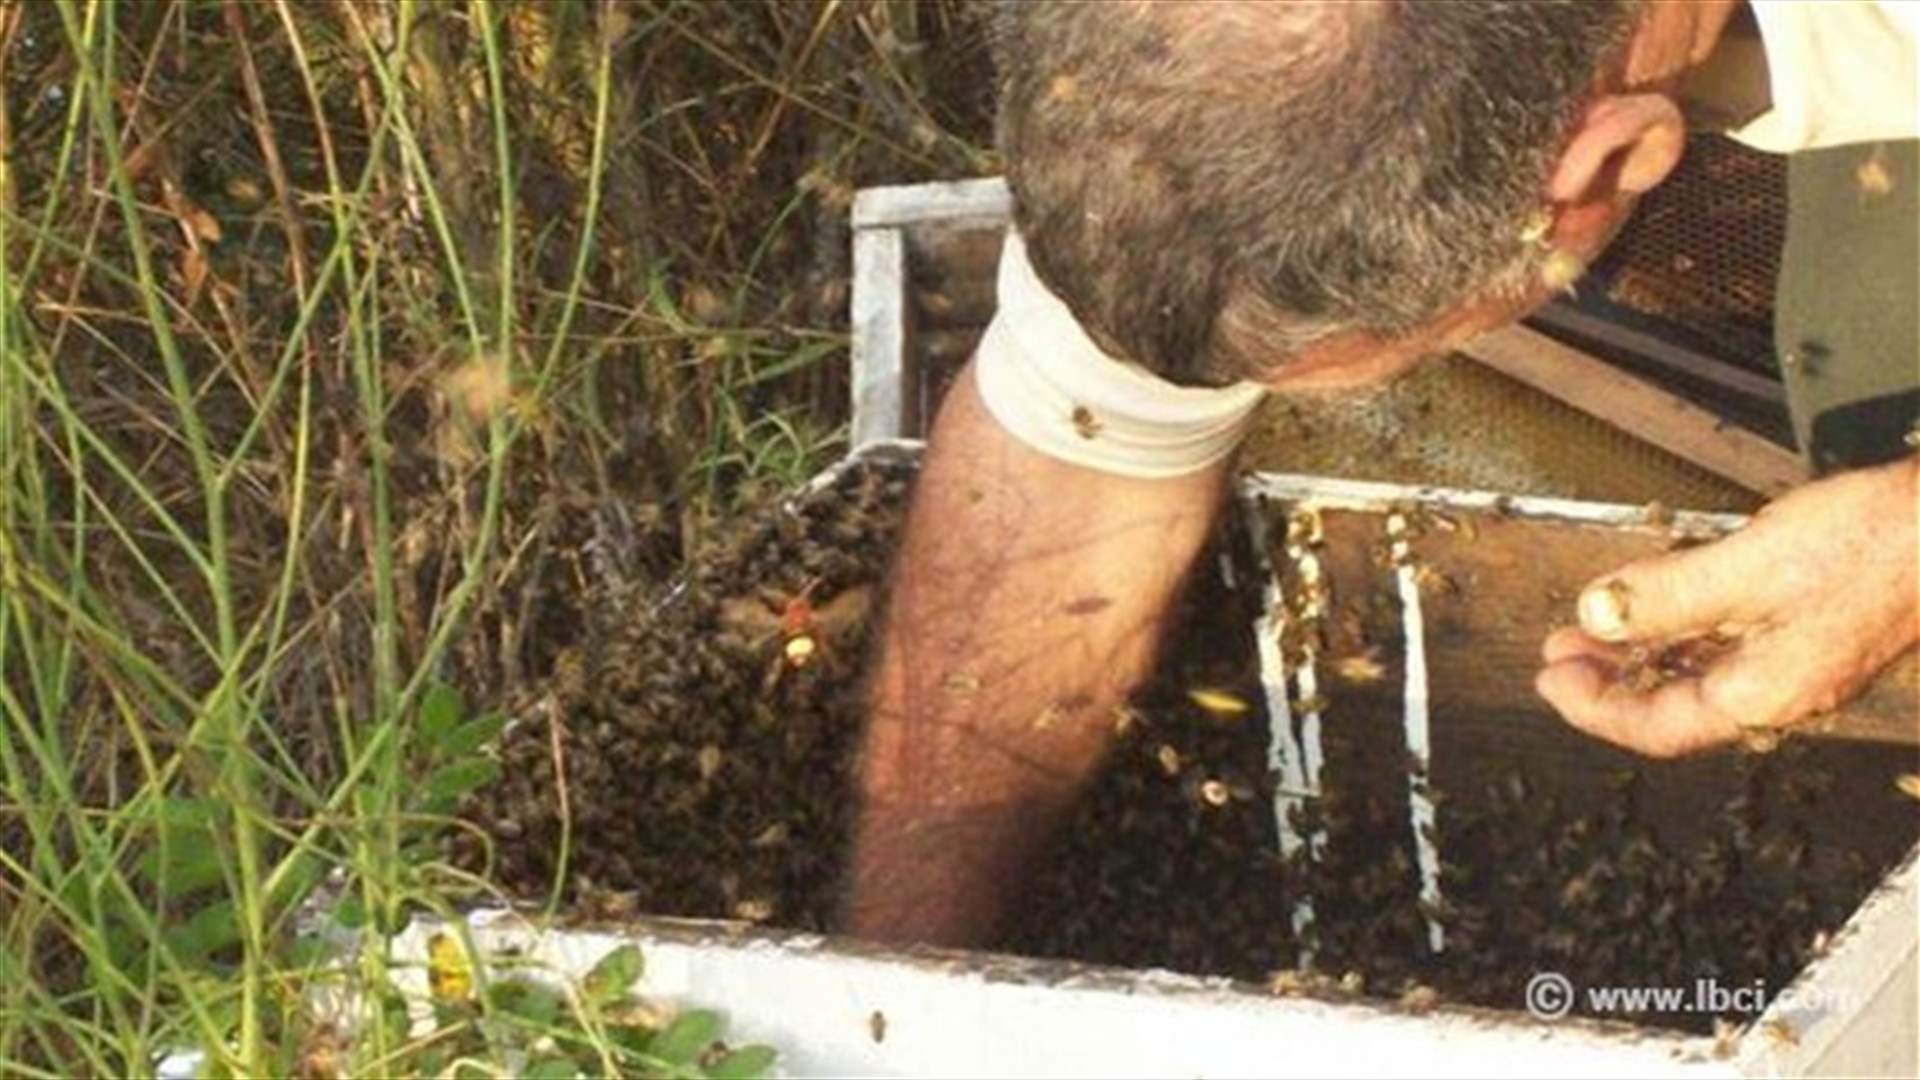 بالصور...الياس خيرالله يدخل قفران النحل من دون اللباس الخاص